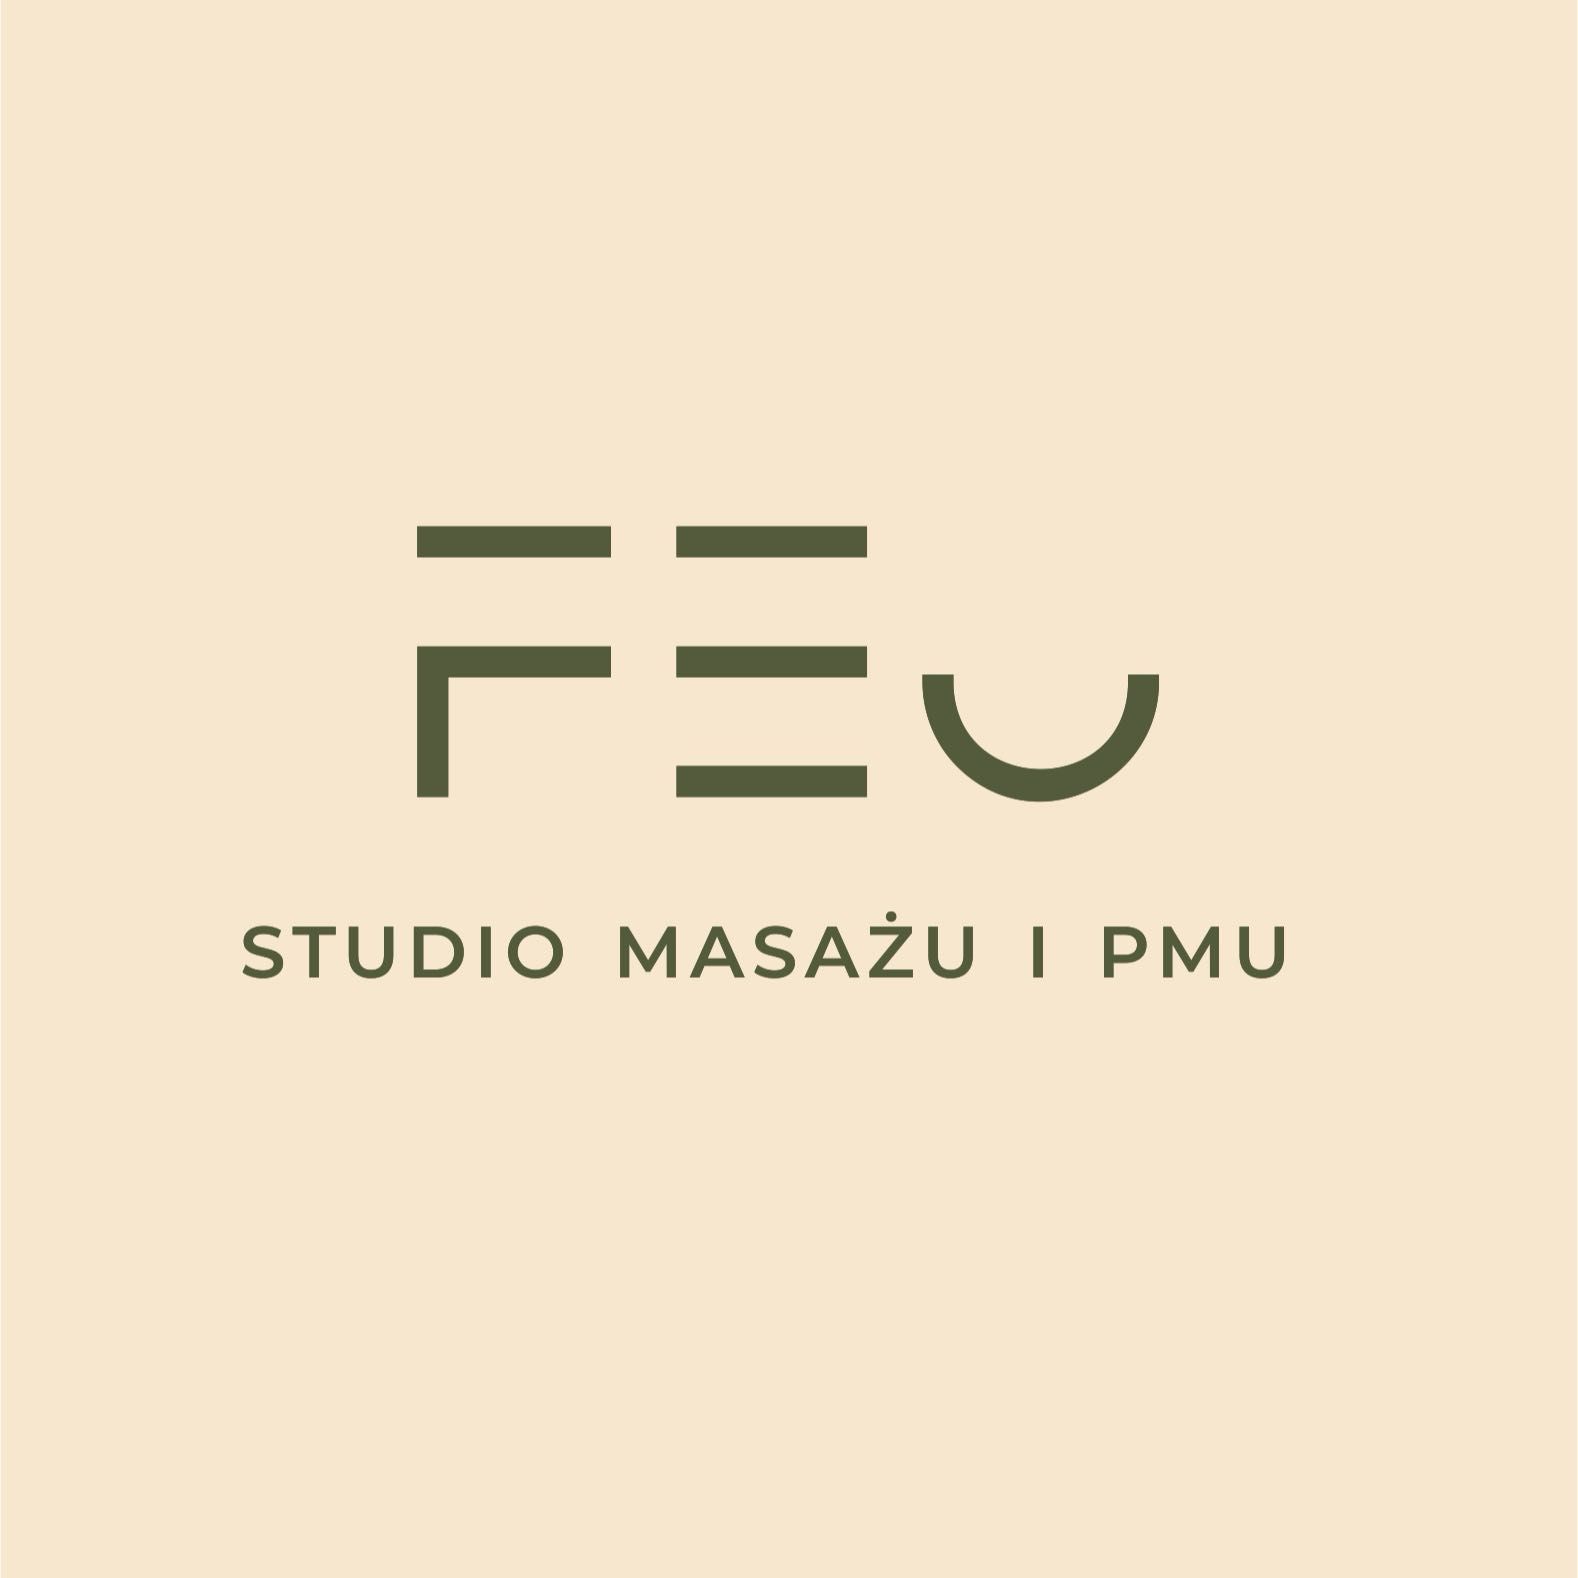 FEU Studio Masażu I Makijażu Permanentnego, Wita Stwosza 3, 50-148, Wrocław